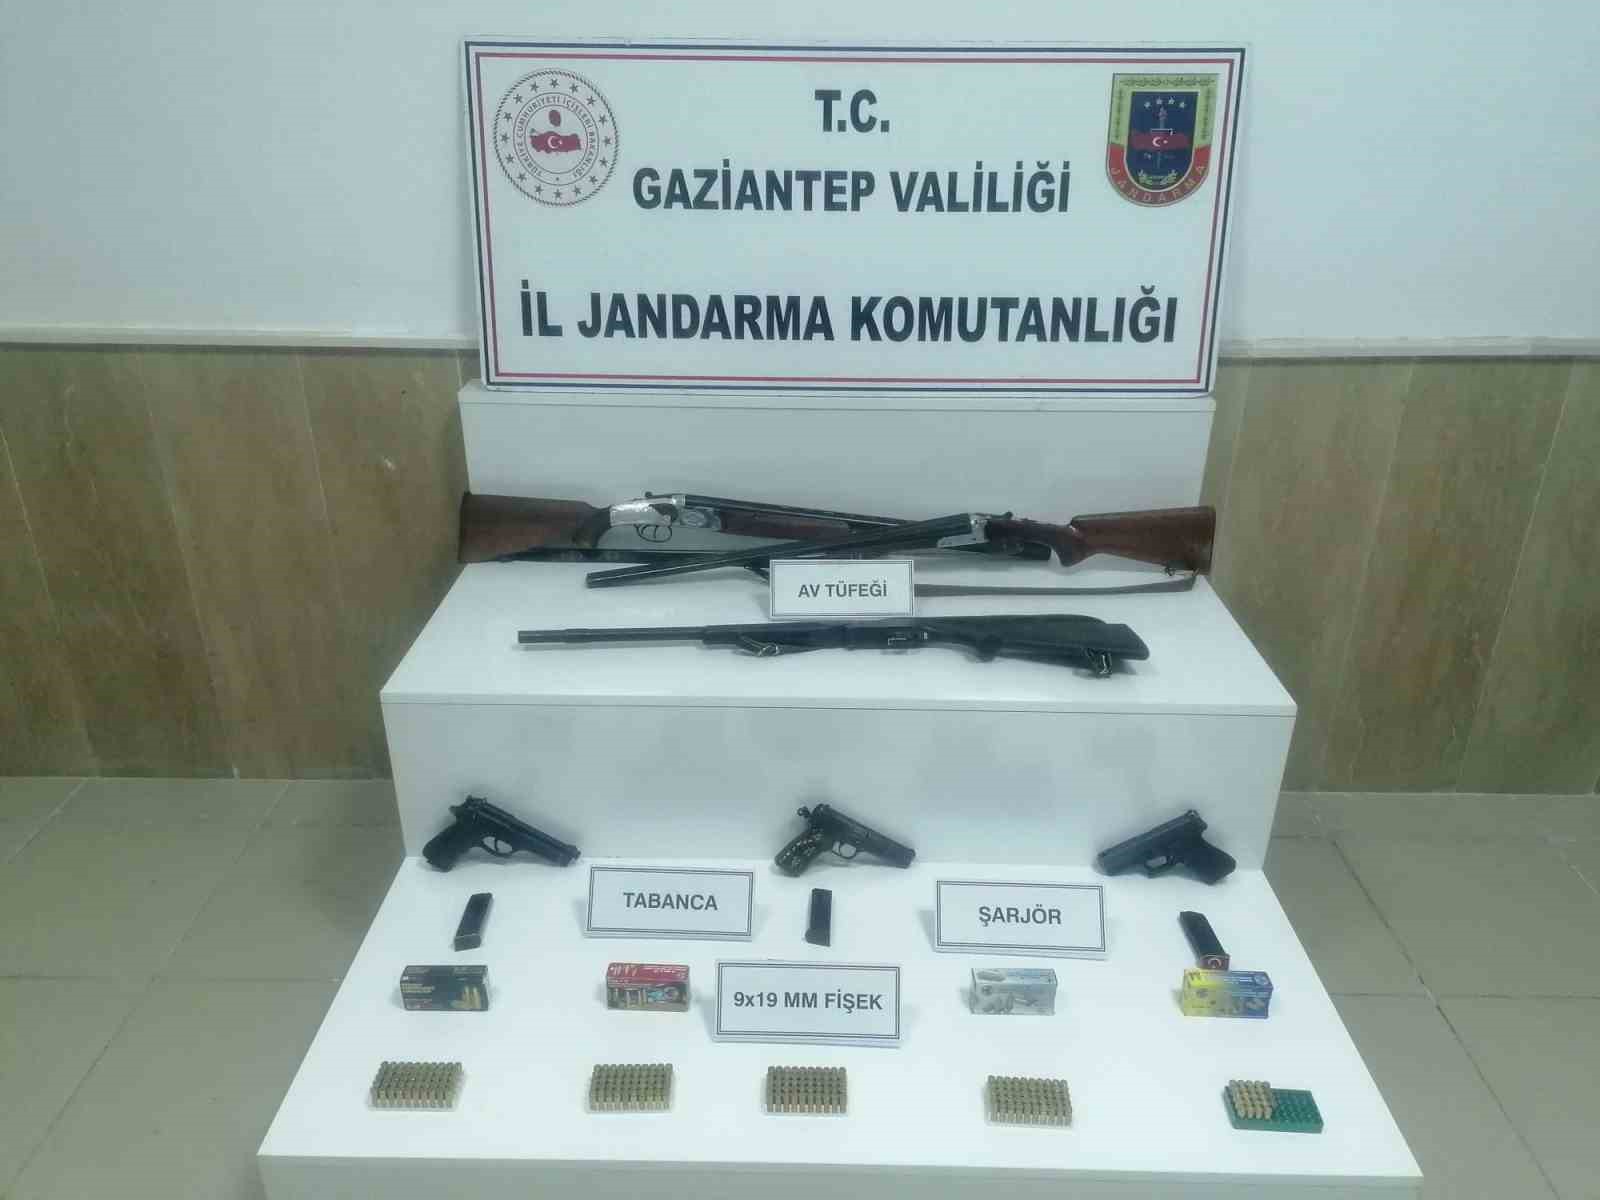 Gaziantep’te kaçak 5 tabanca ile 3 av tüfeği ele geçirildi